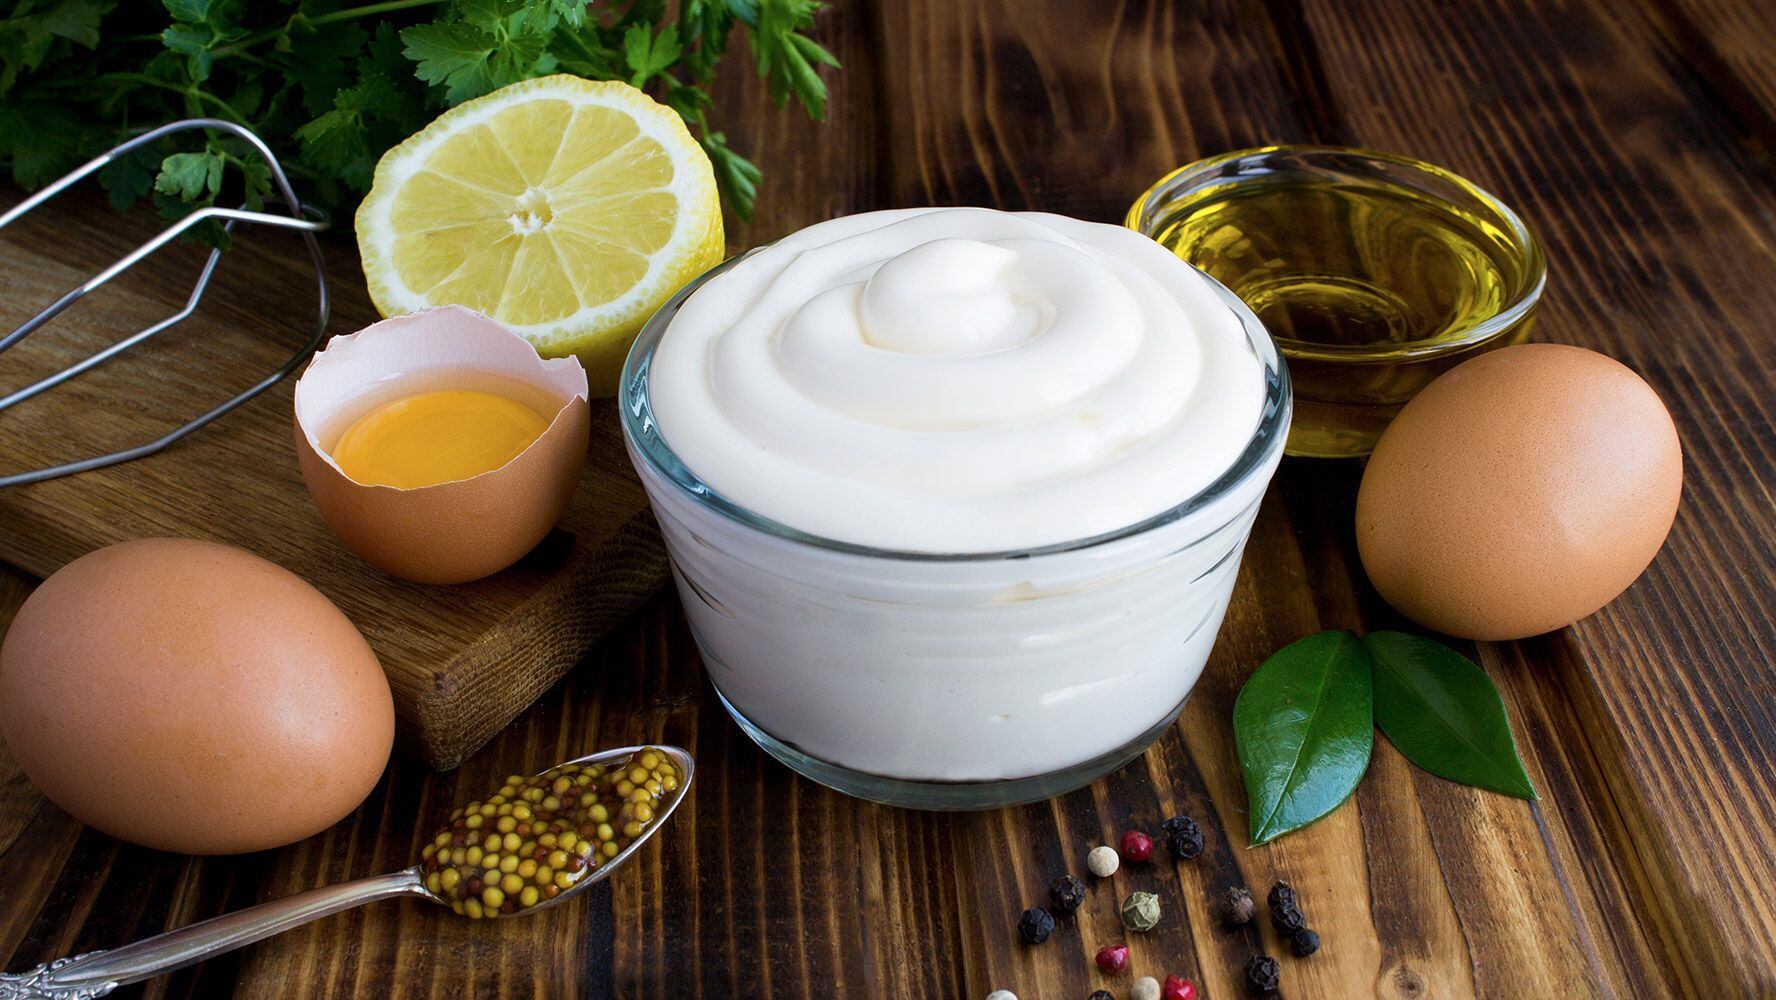 La mayonesa es el resultado de una emulsión de yema de huevo. (Foto: Shuttertsock)